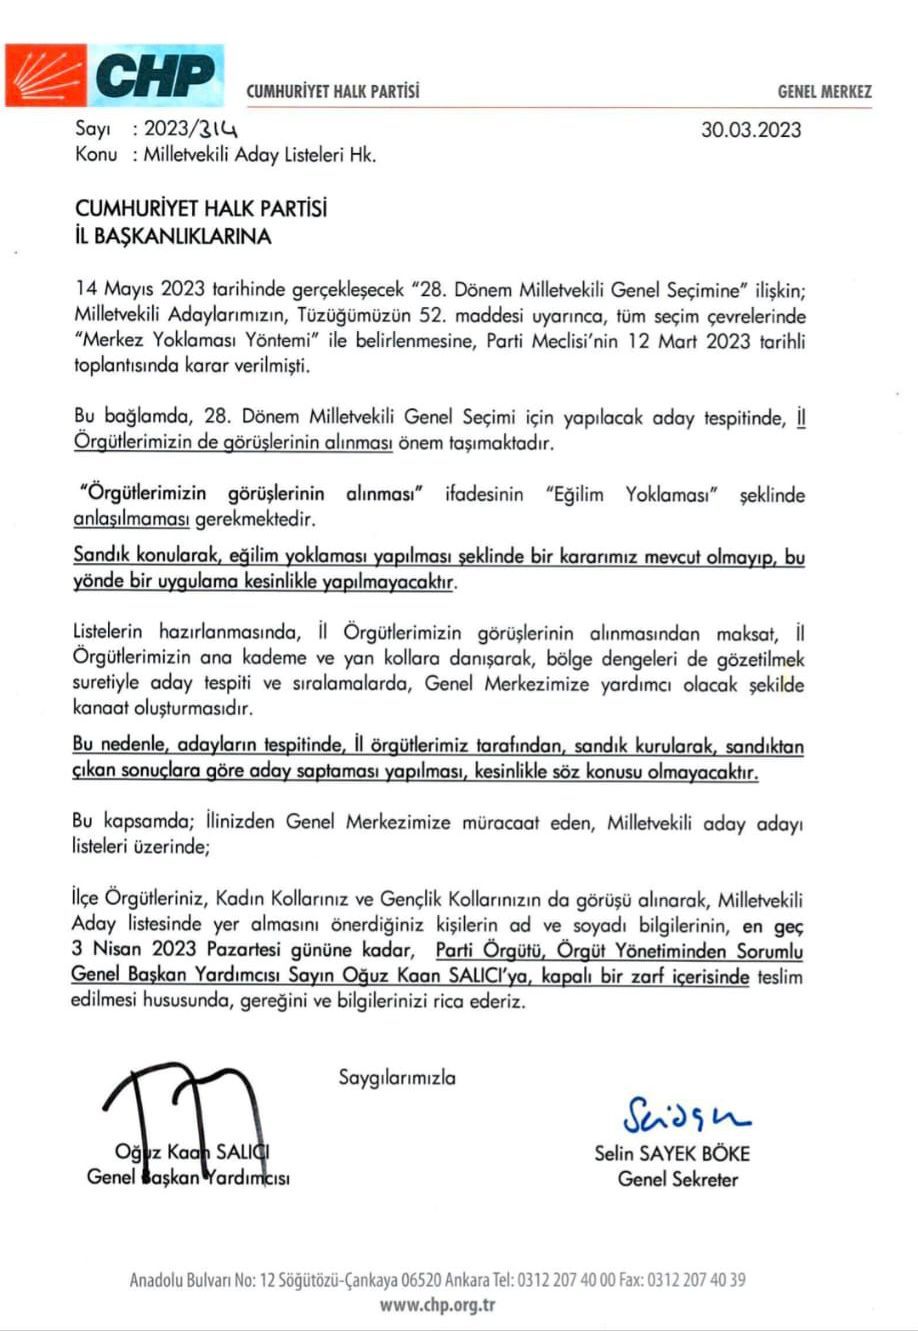 Cumhuriyet Halk Partisi(CHP) Genel Merkezi milletvekili adaylarını belirleme konusunda il başkanlıklarına talimat gönderdi. Talimatta ön seçim yapılmamasının altı çizildi. Peki adaylar nasıl belirlenecek?